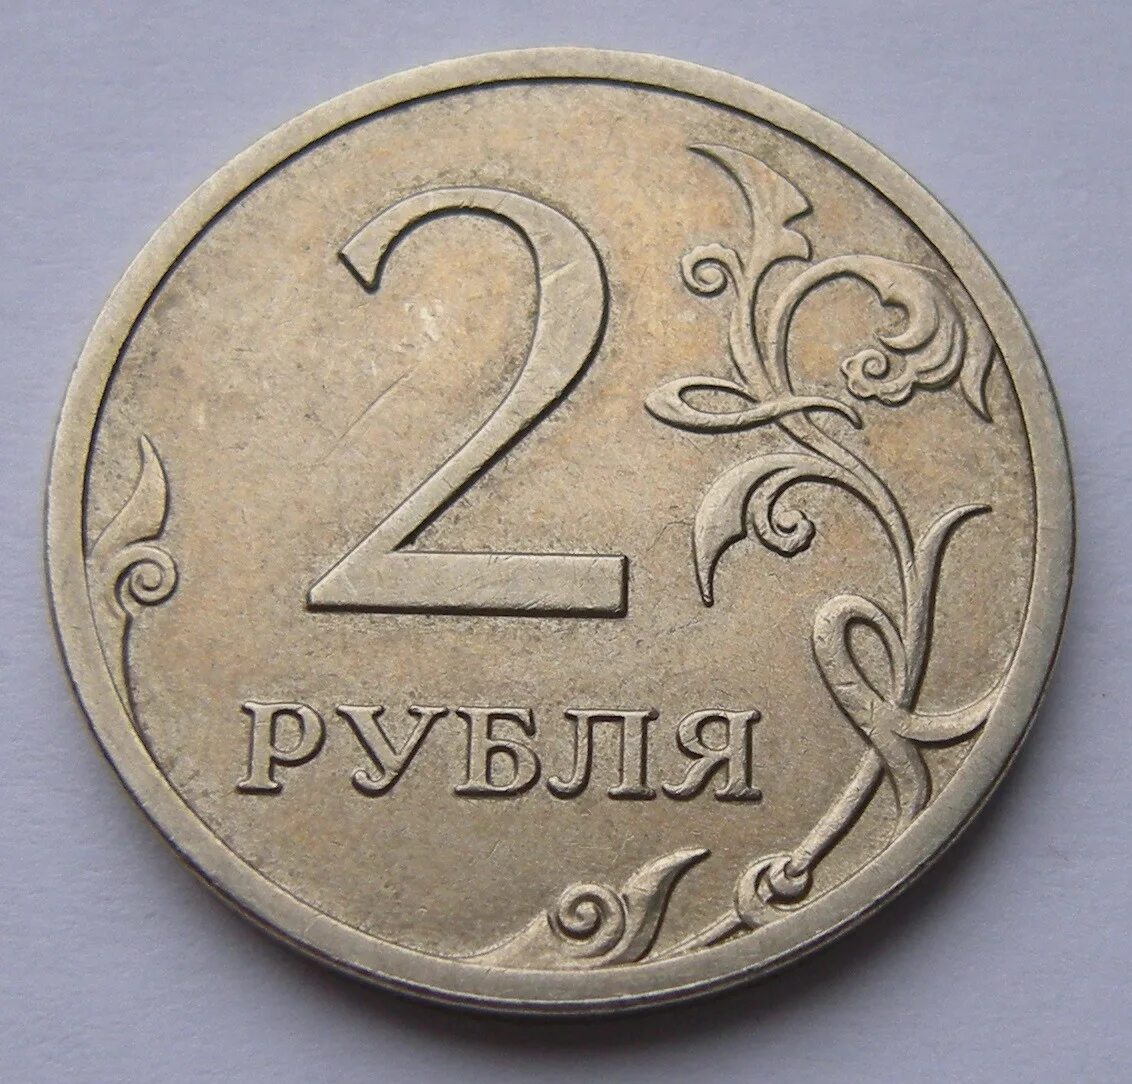 Деньги 5 и 10 рублей. Монета 2 рубля. Монеты 1 2 5 рублей. Изображение монет. Монеты 1 руб 2 руб.